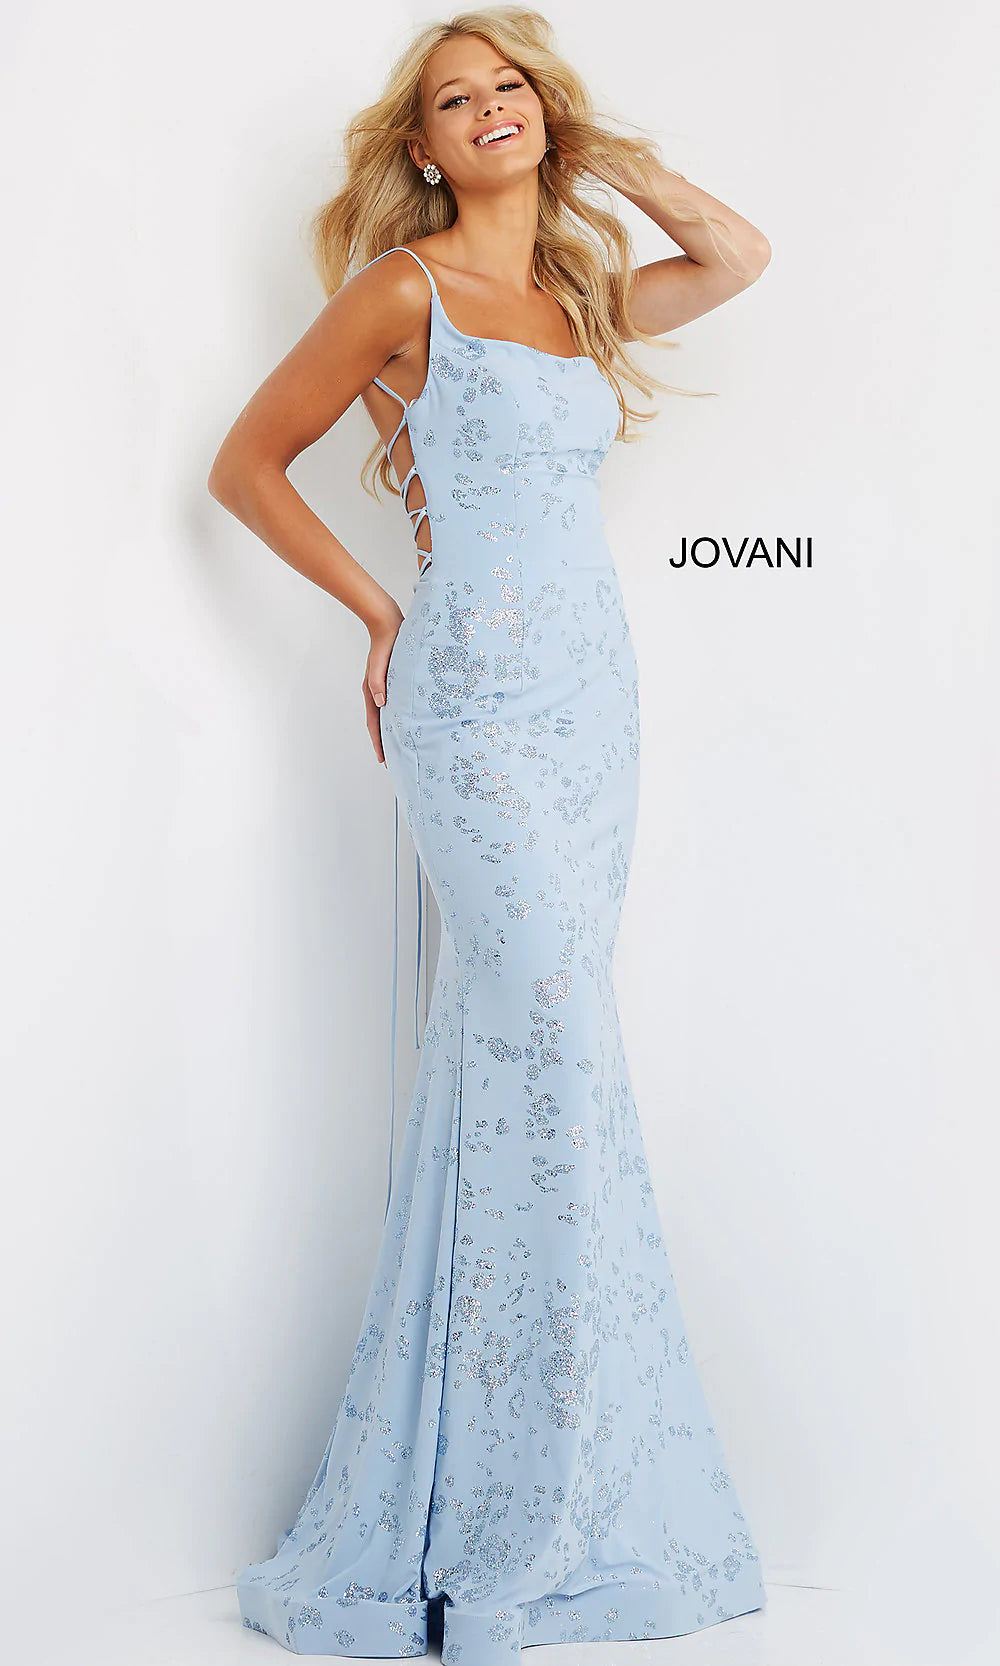 JVN by Jovani Light Blue Glitter Prom Dress - PromGirl